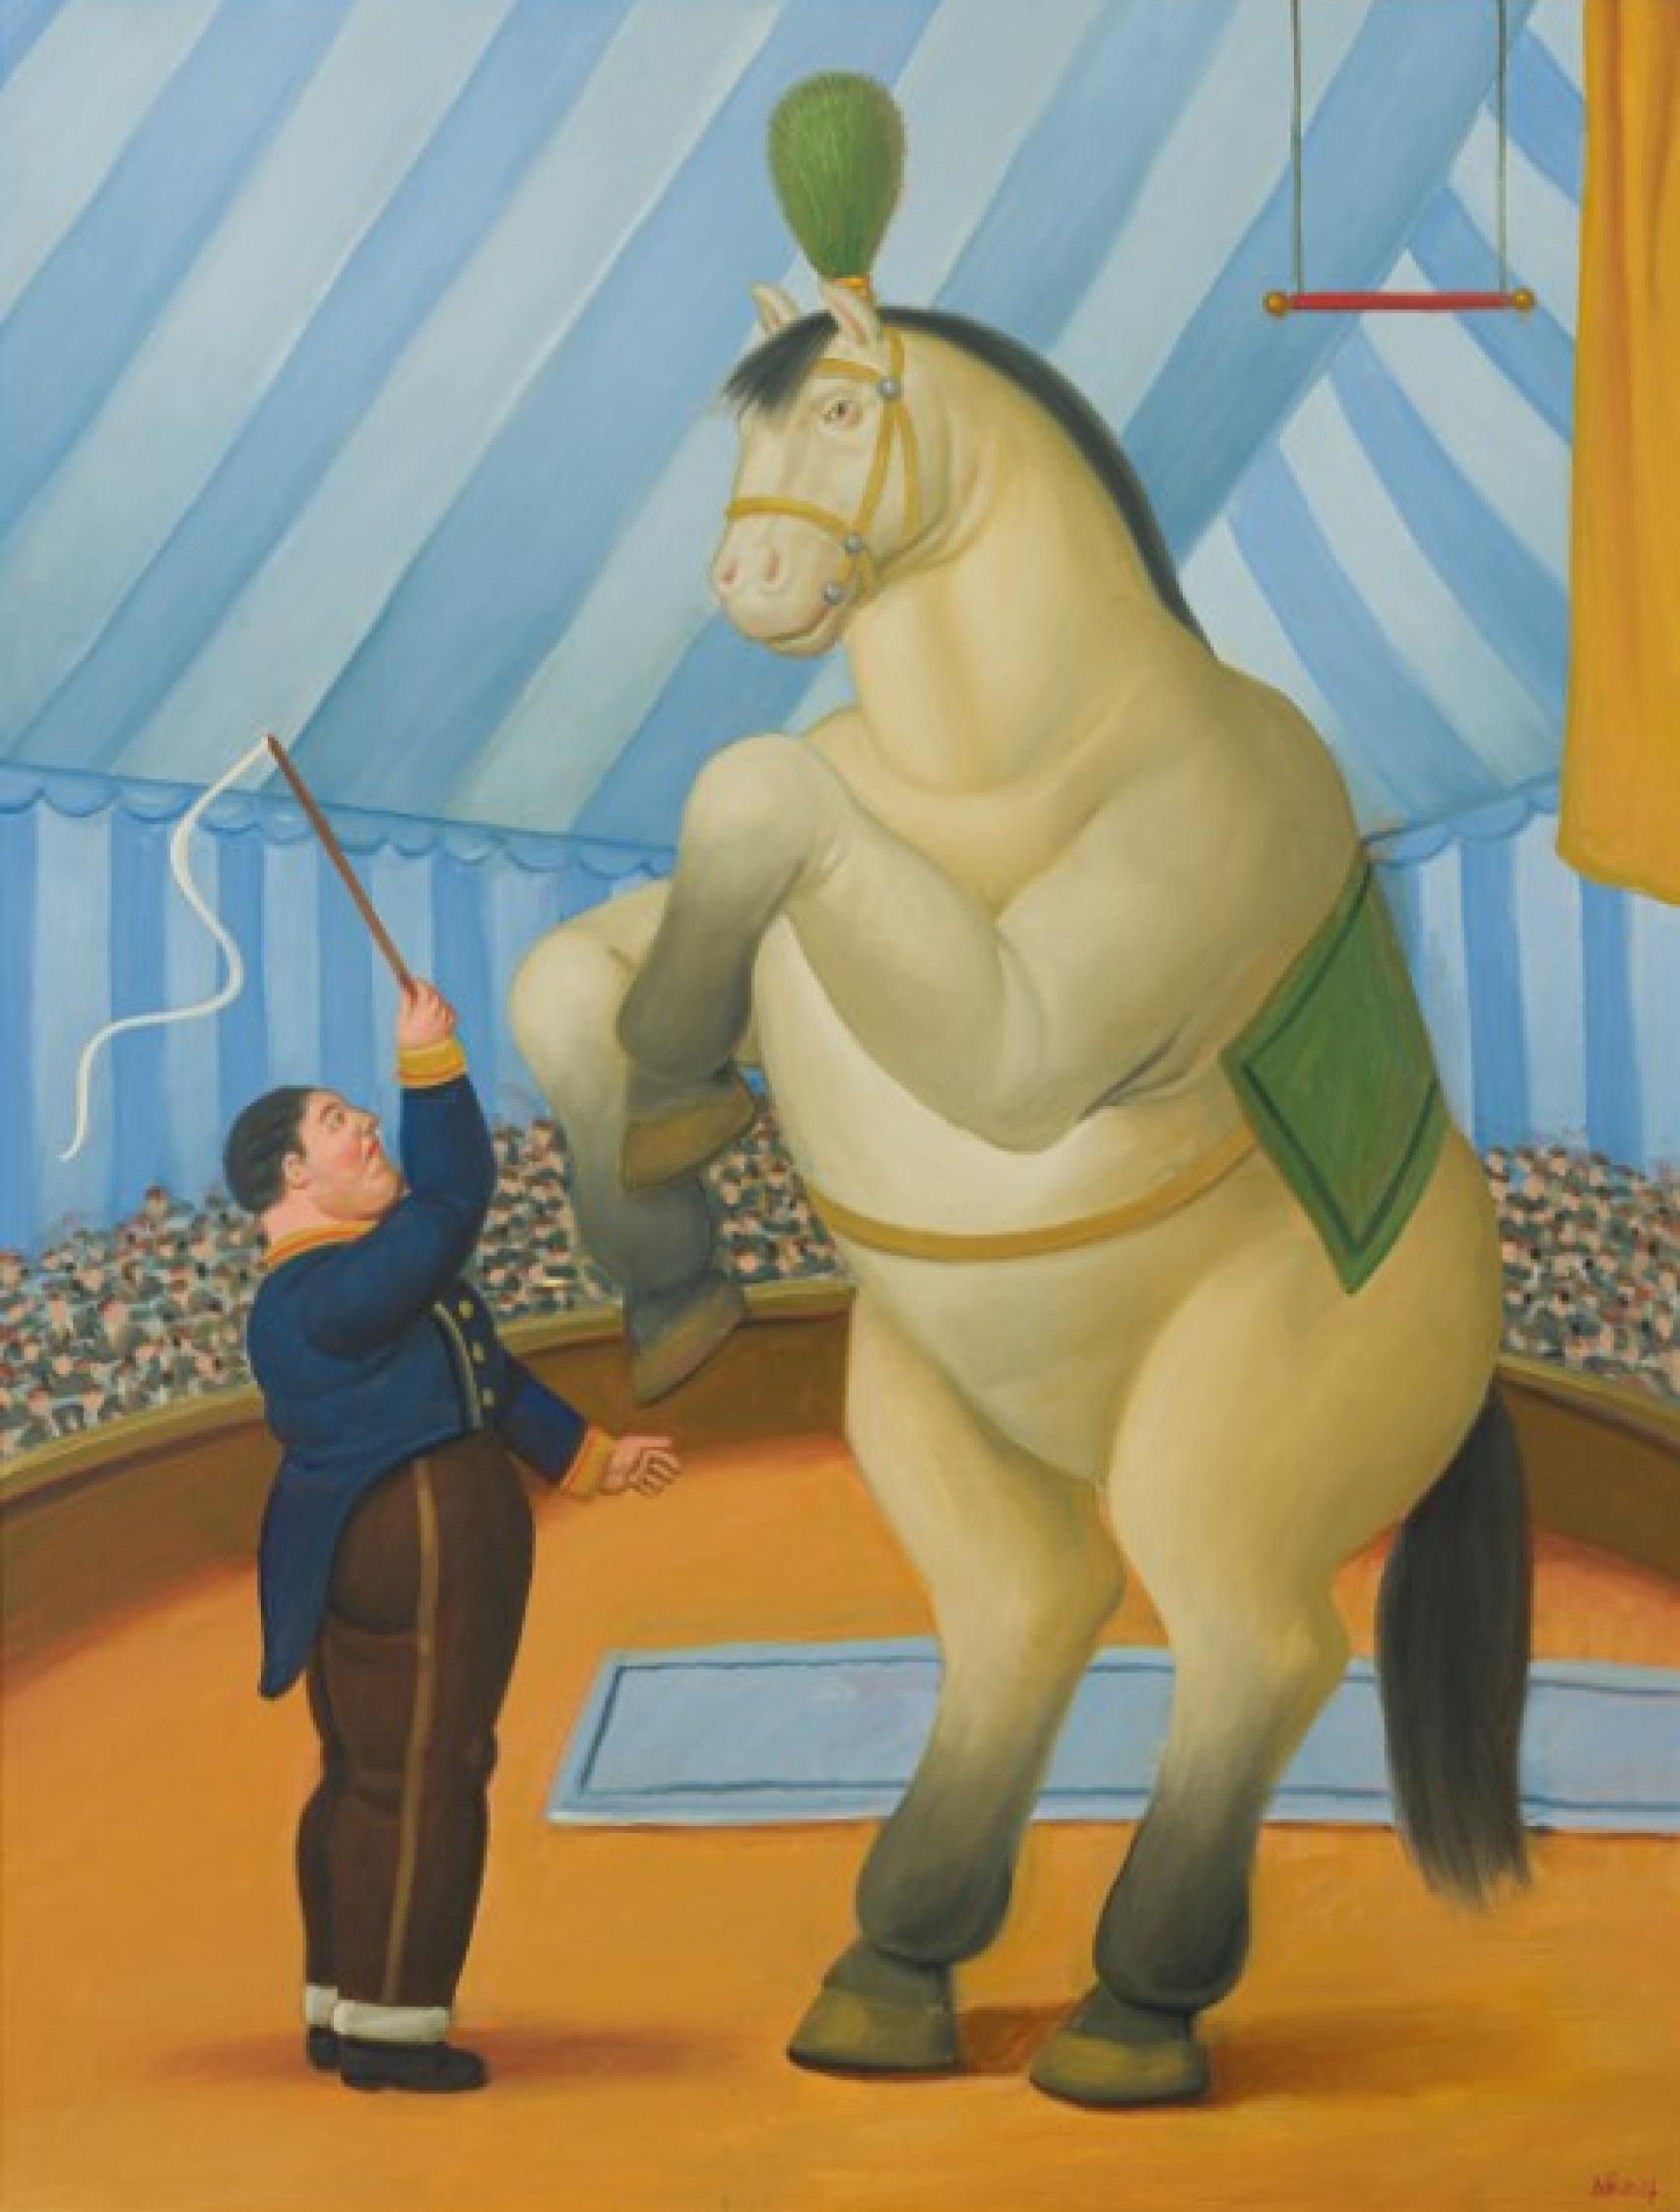 Fernando Botero. “Caballo y domador“. 1990. Óleo sobre lienzo. Colección CaixaBank